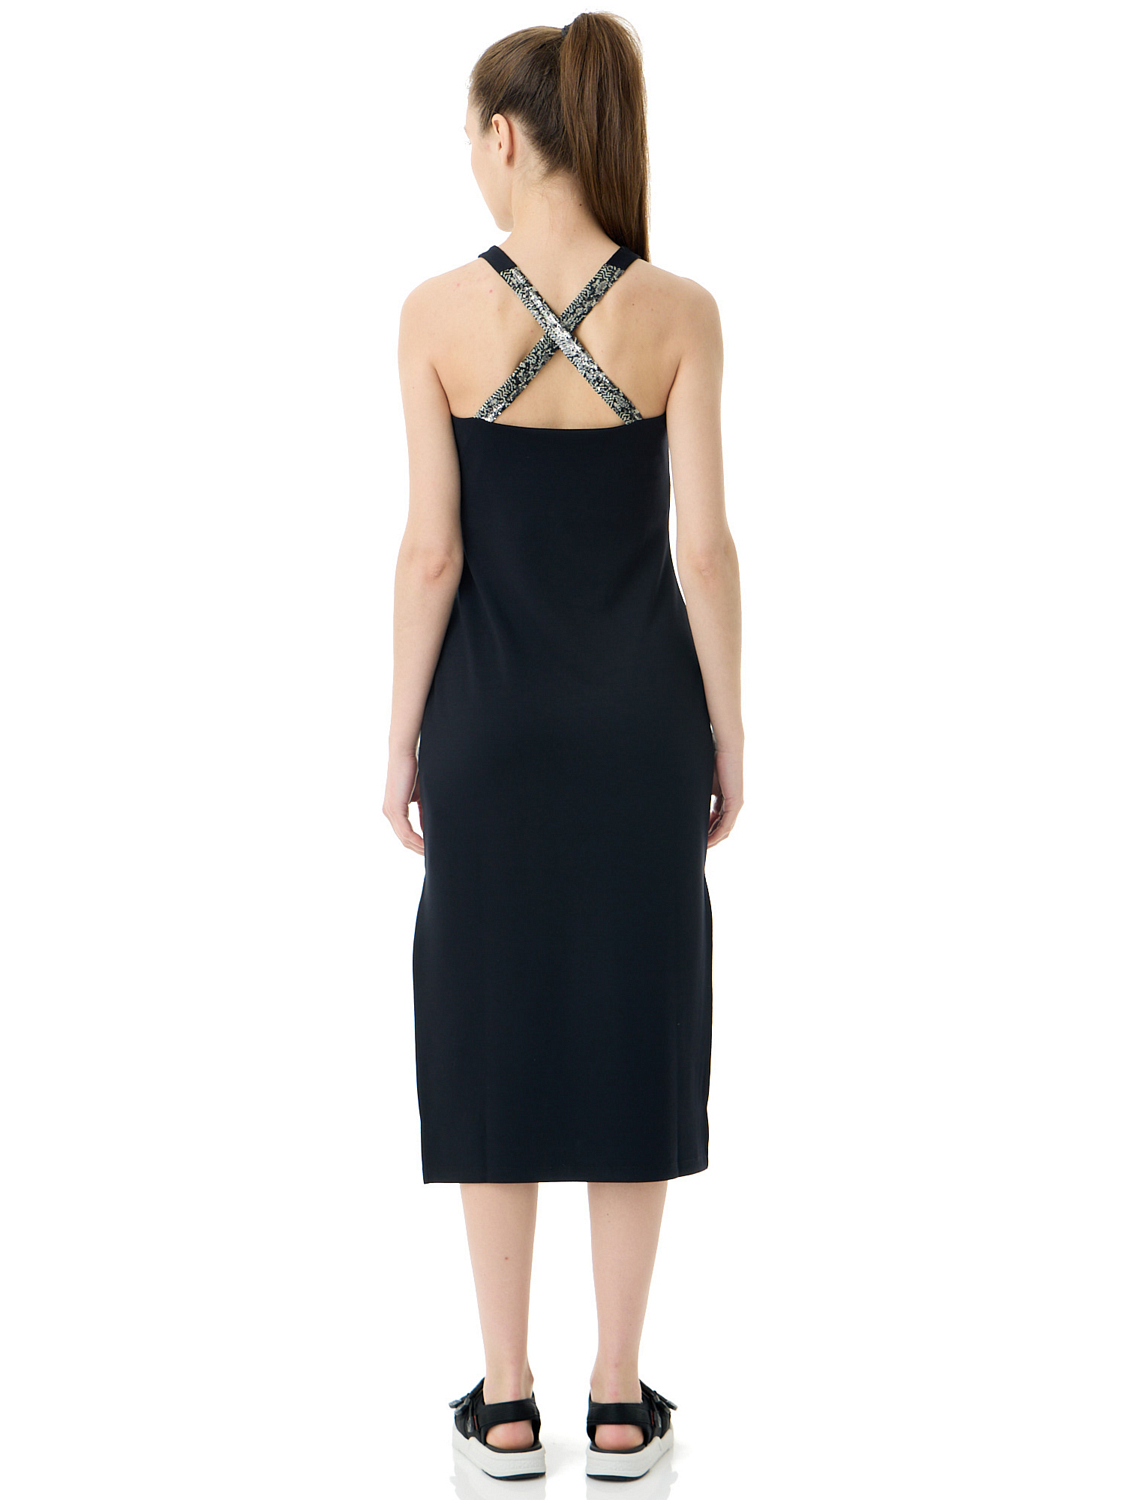 Платье для активного отдыха EA7 Emporio Armani Dress Black